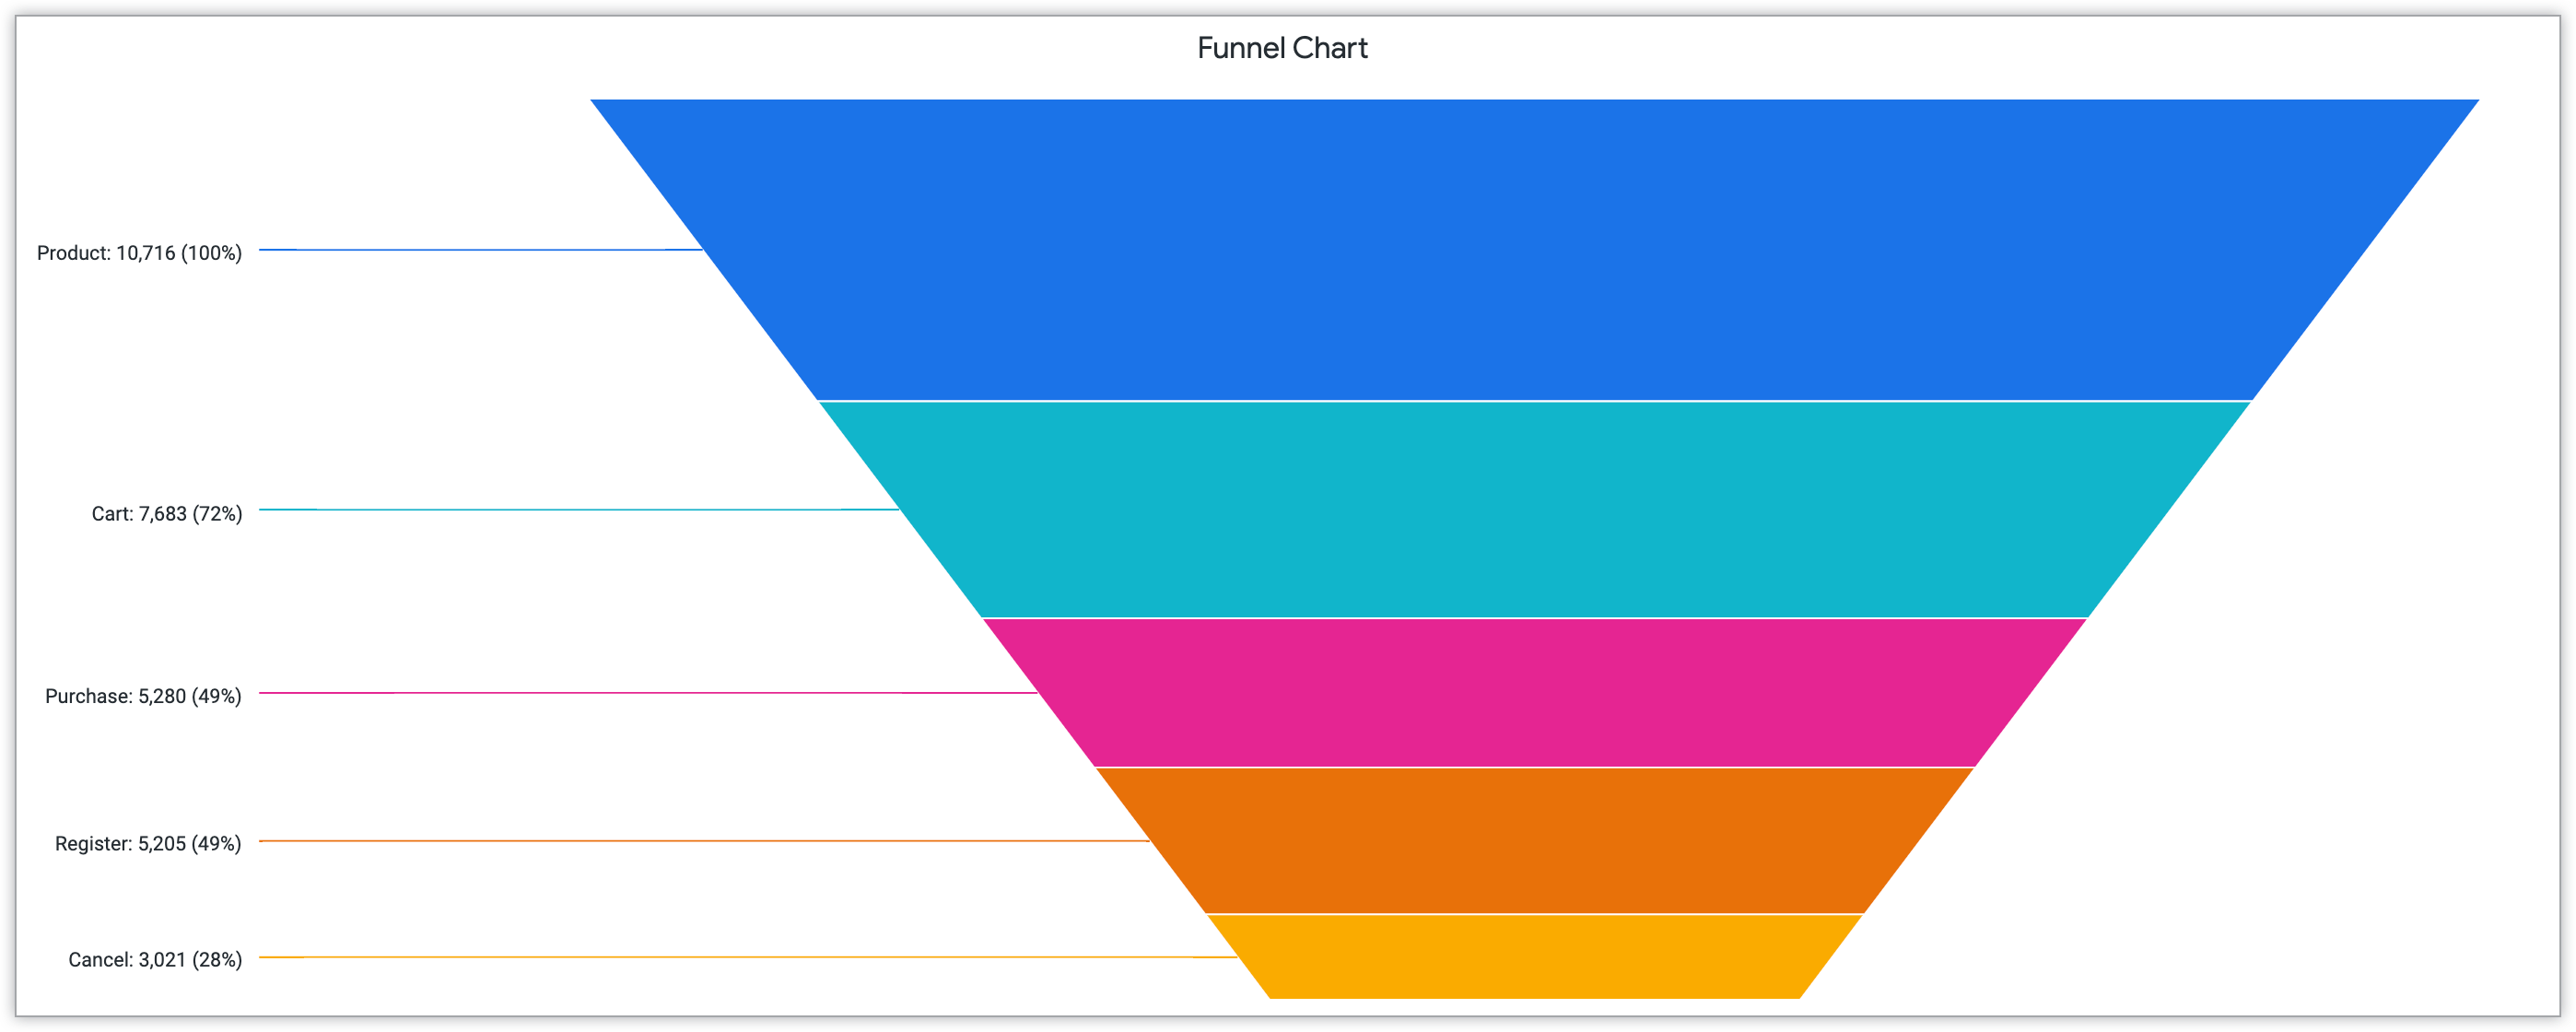 Grafico a imbuto che mostra la percentuale di azioni dei clienti nelle fasi Prodotto, Carrello, Acquisto, Registrazione e Annulla.